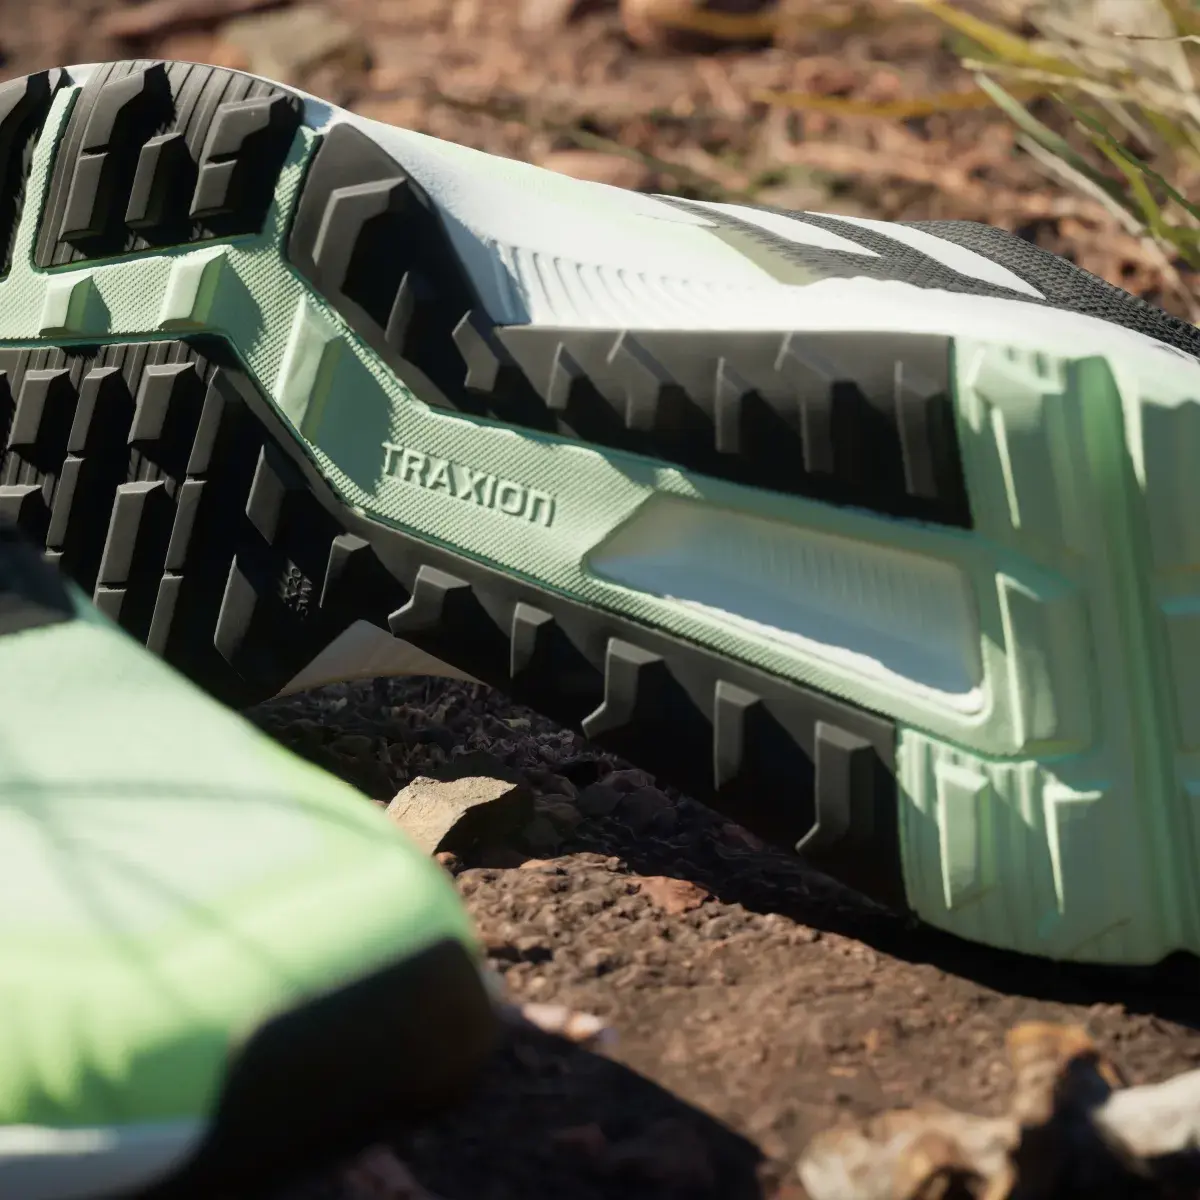 Adidas Terrex Soulstride Arazi Koşu Ayakkabısı. 2